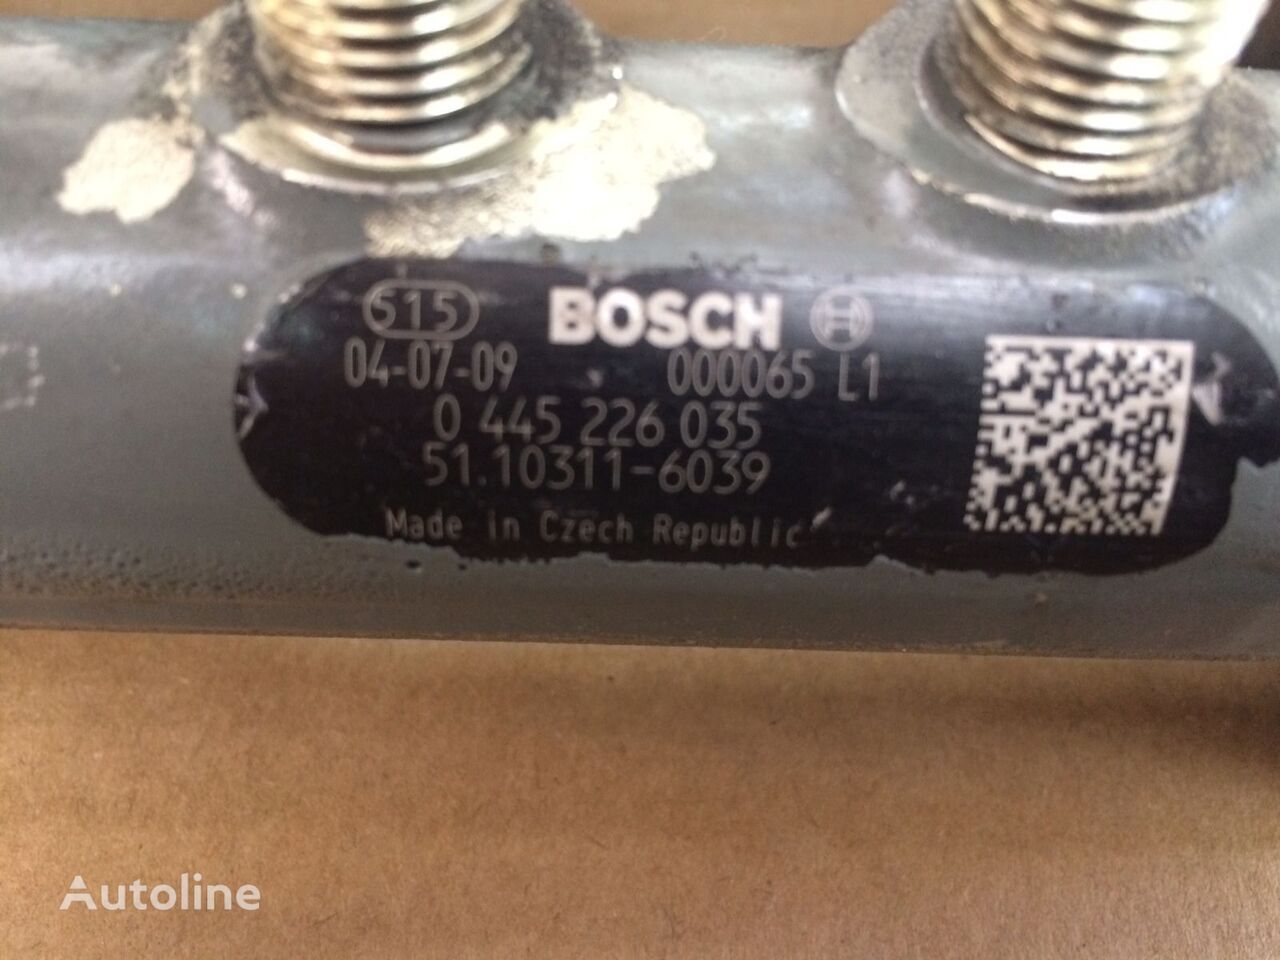 מזרק עבור משאית Bosch - TUBO PRESSIONE COMMON RAIL BOSCH   MAN: תמונה 6